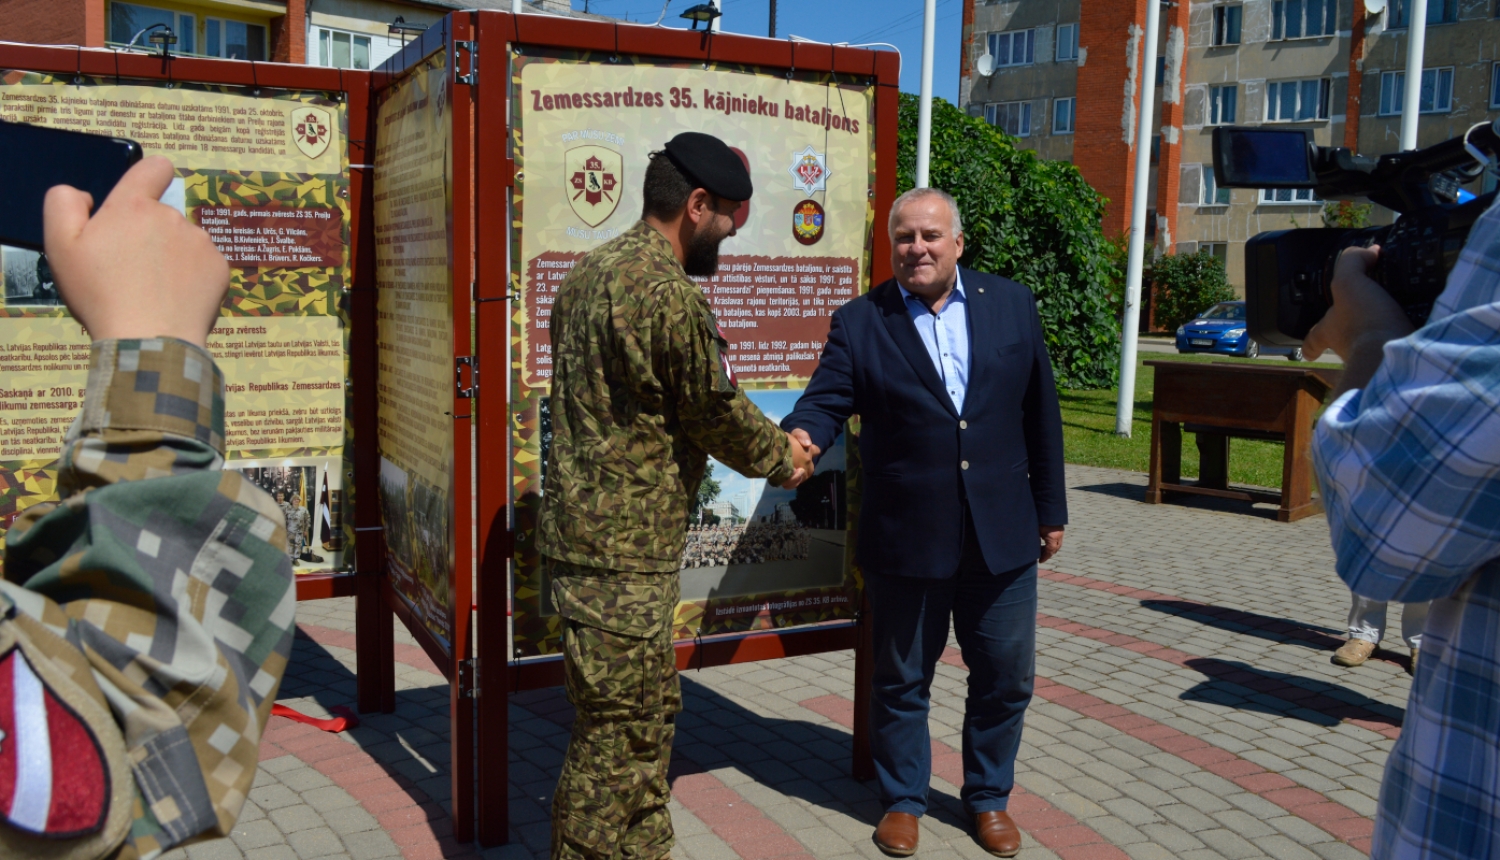 Zemessardzes 35.kājnieku bataljona komandieris un Līvānu novada domes priekšsēdētājs atklāj foto izstādi